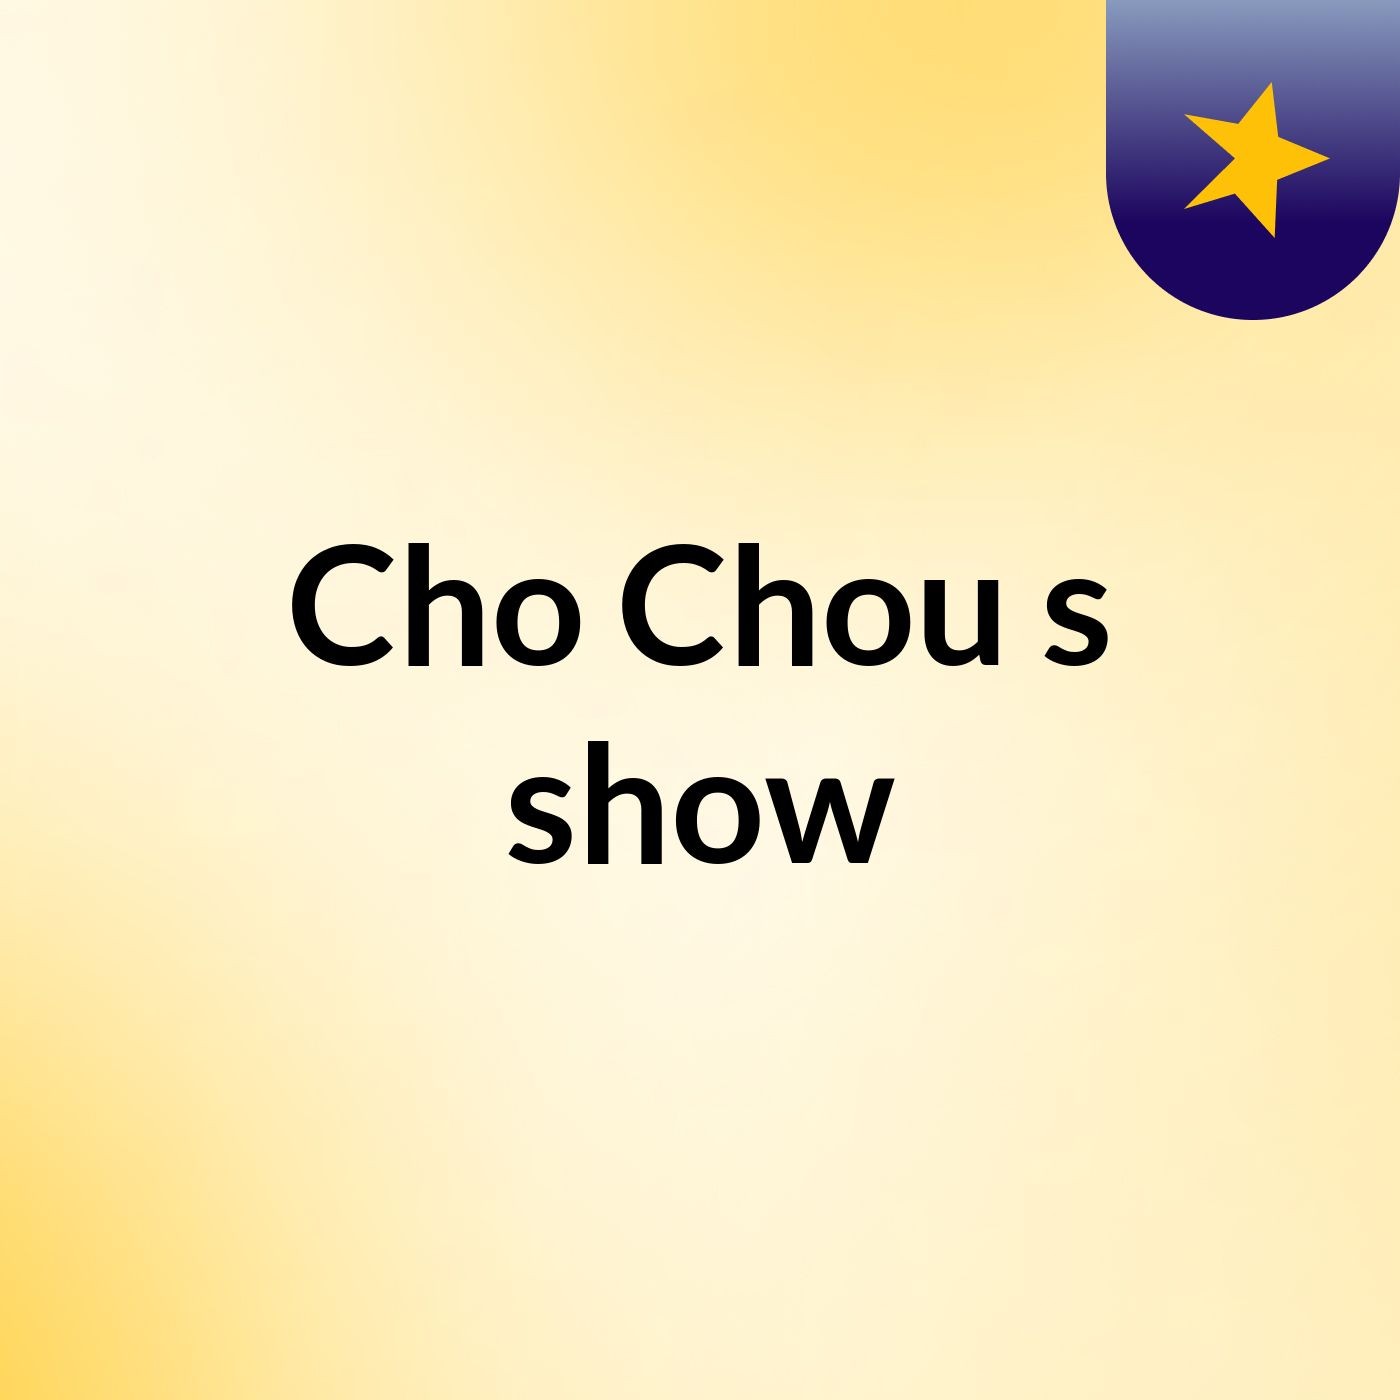 Cho Chou's show